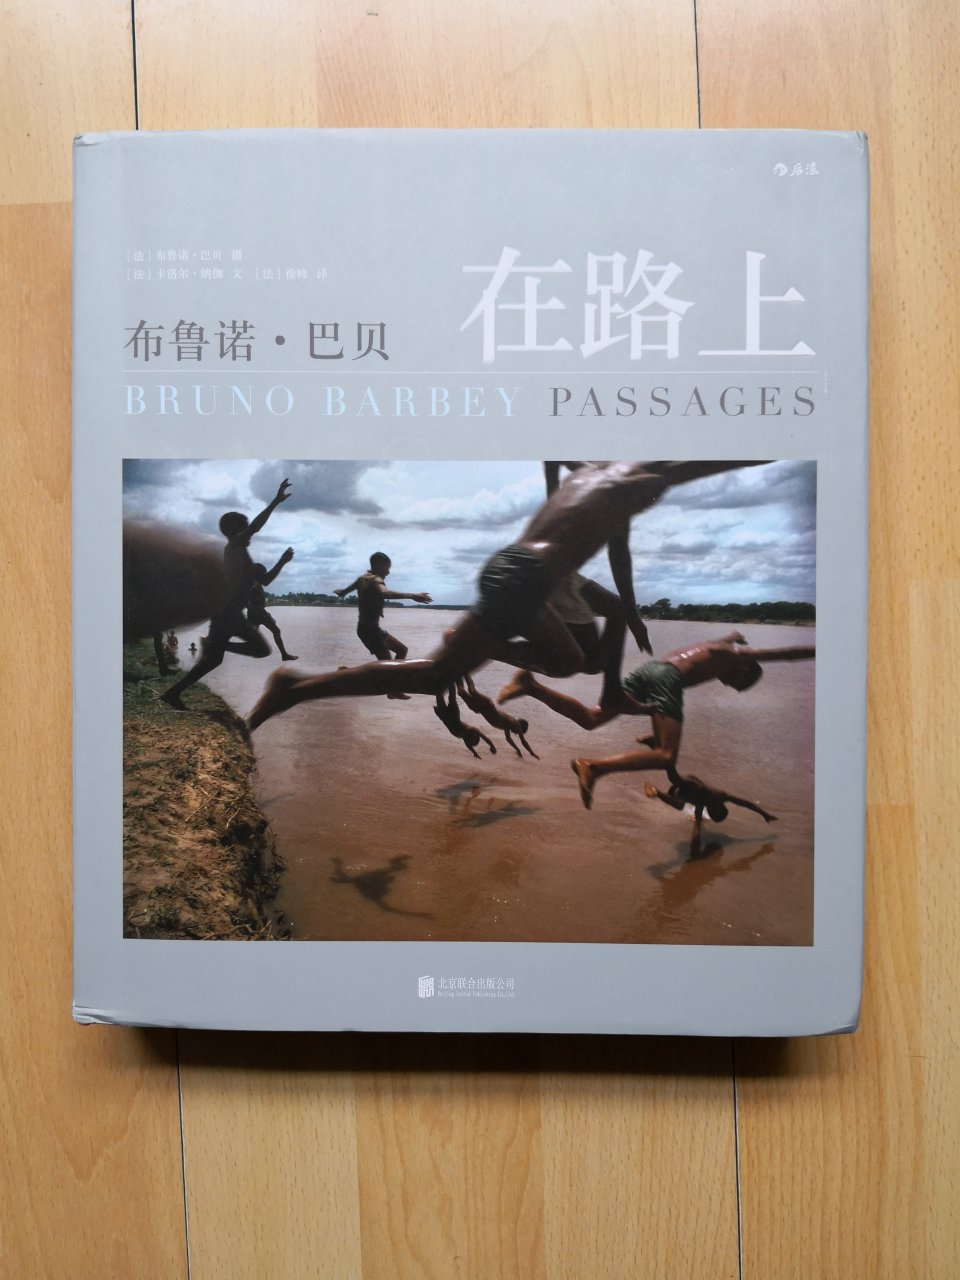 这本书我关注了很长时间了，由于感觉此书的价格有点高一直都没买。这次虽说不是双11但是买100送50还是很划算的。收到书后翻了翻 ，书很大，书的纸张和印刷都不错。书中介绍了布鲁诺.巴贝在世界各国其中也有中国拍摄的照片，很精良值得收藏。